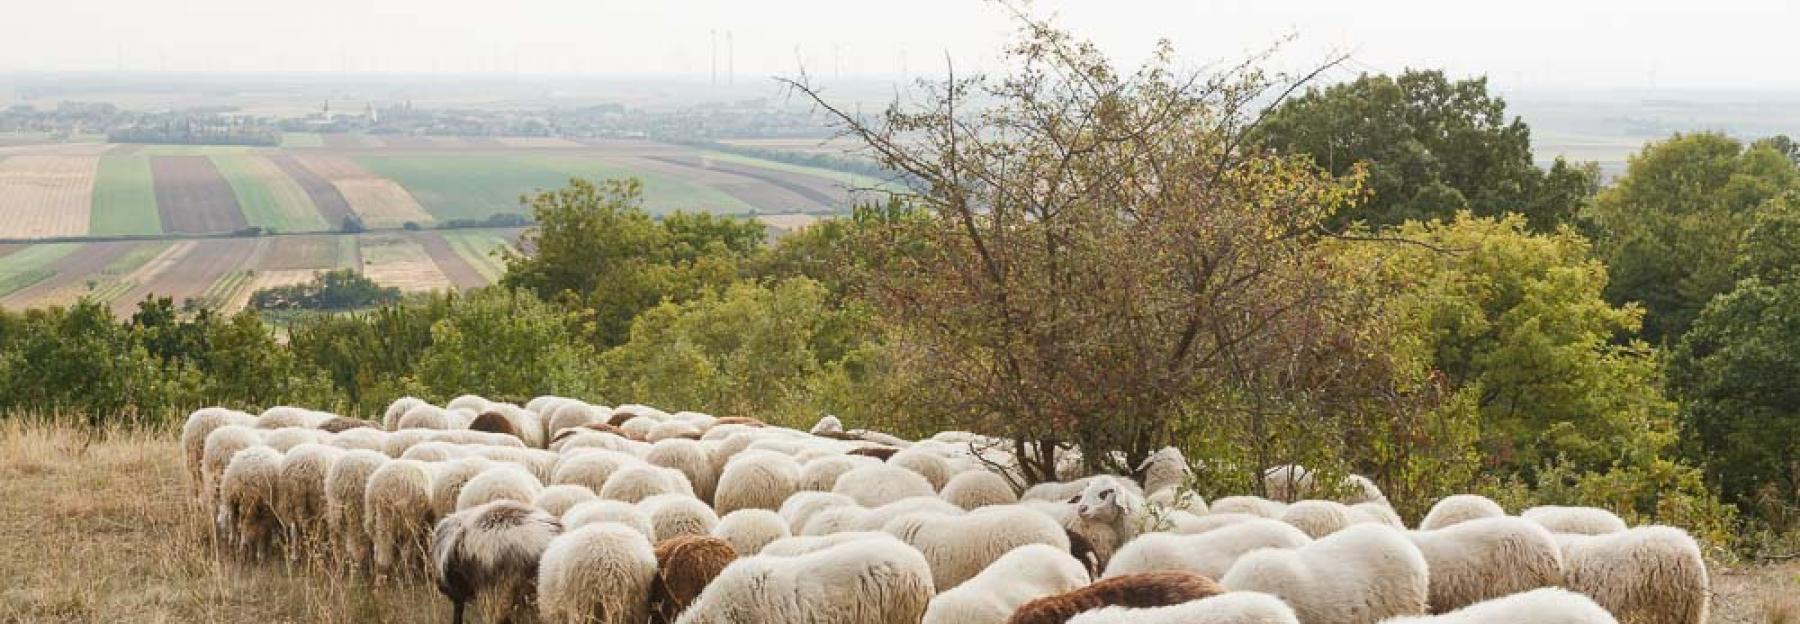 Schafe auf einem Hügel_Zillner